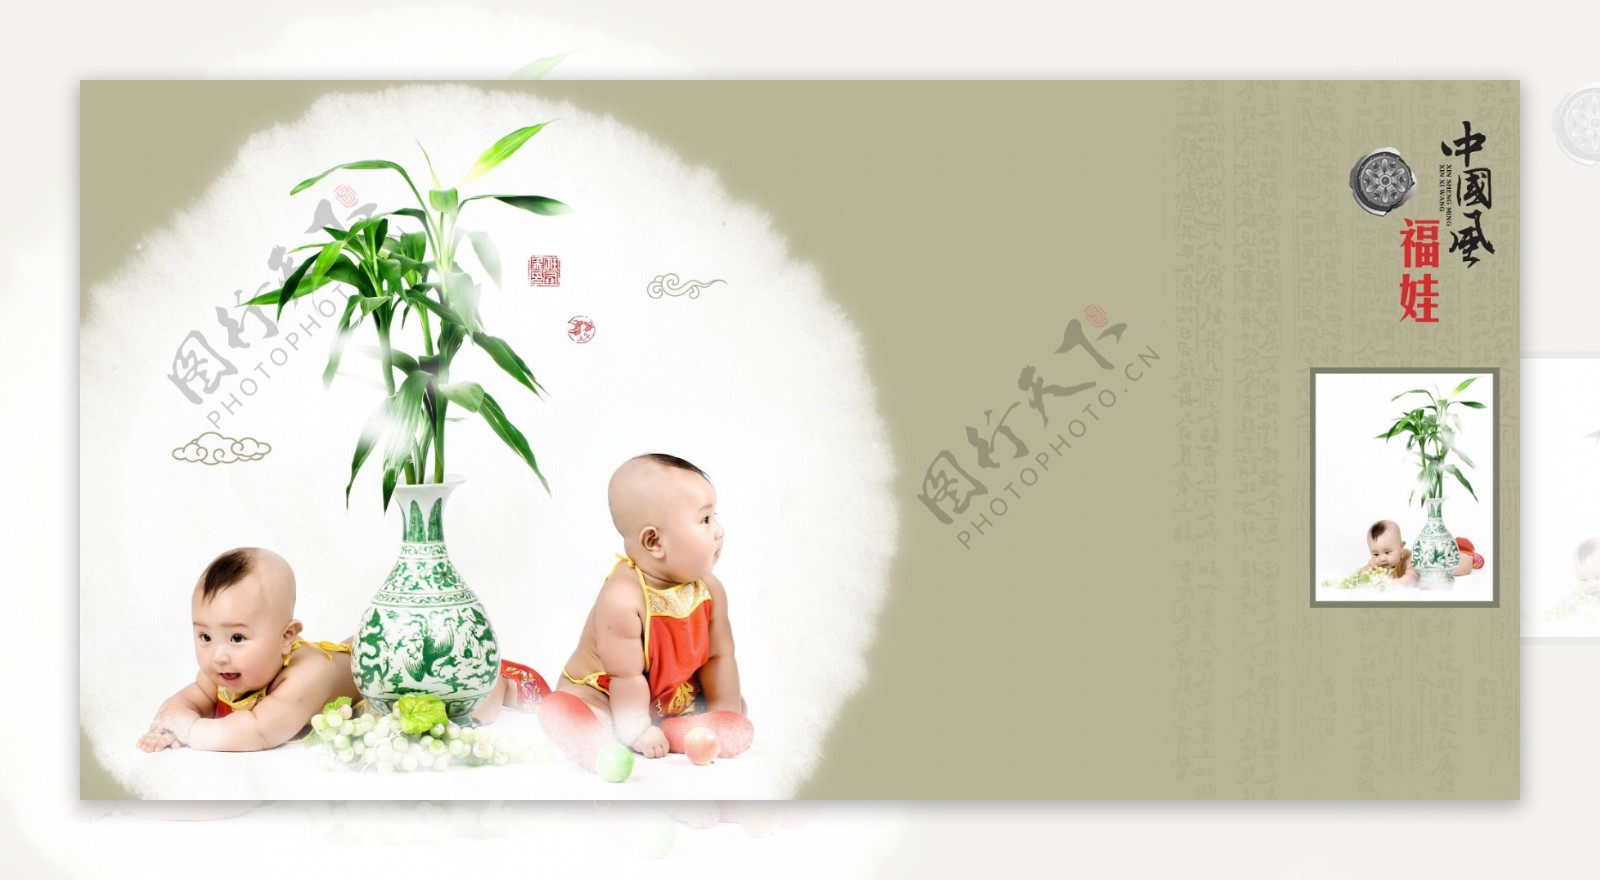 中国风花瓶宝宝相册模板